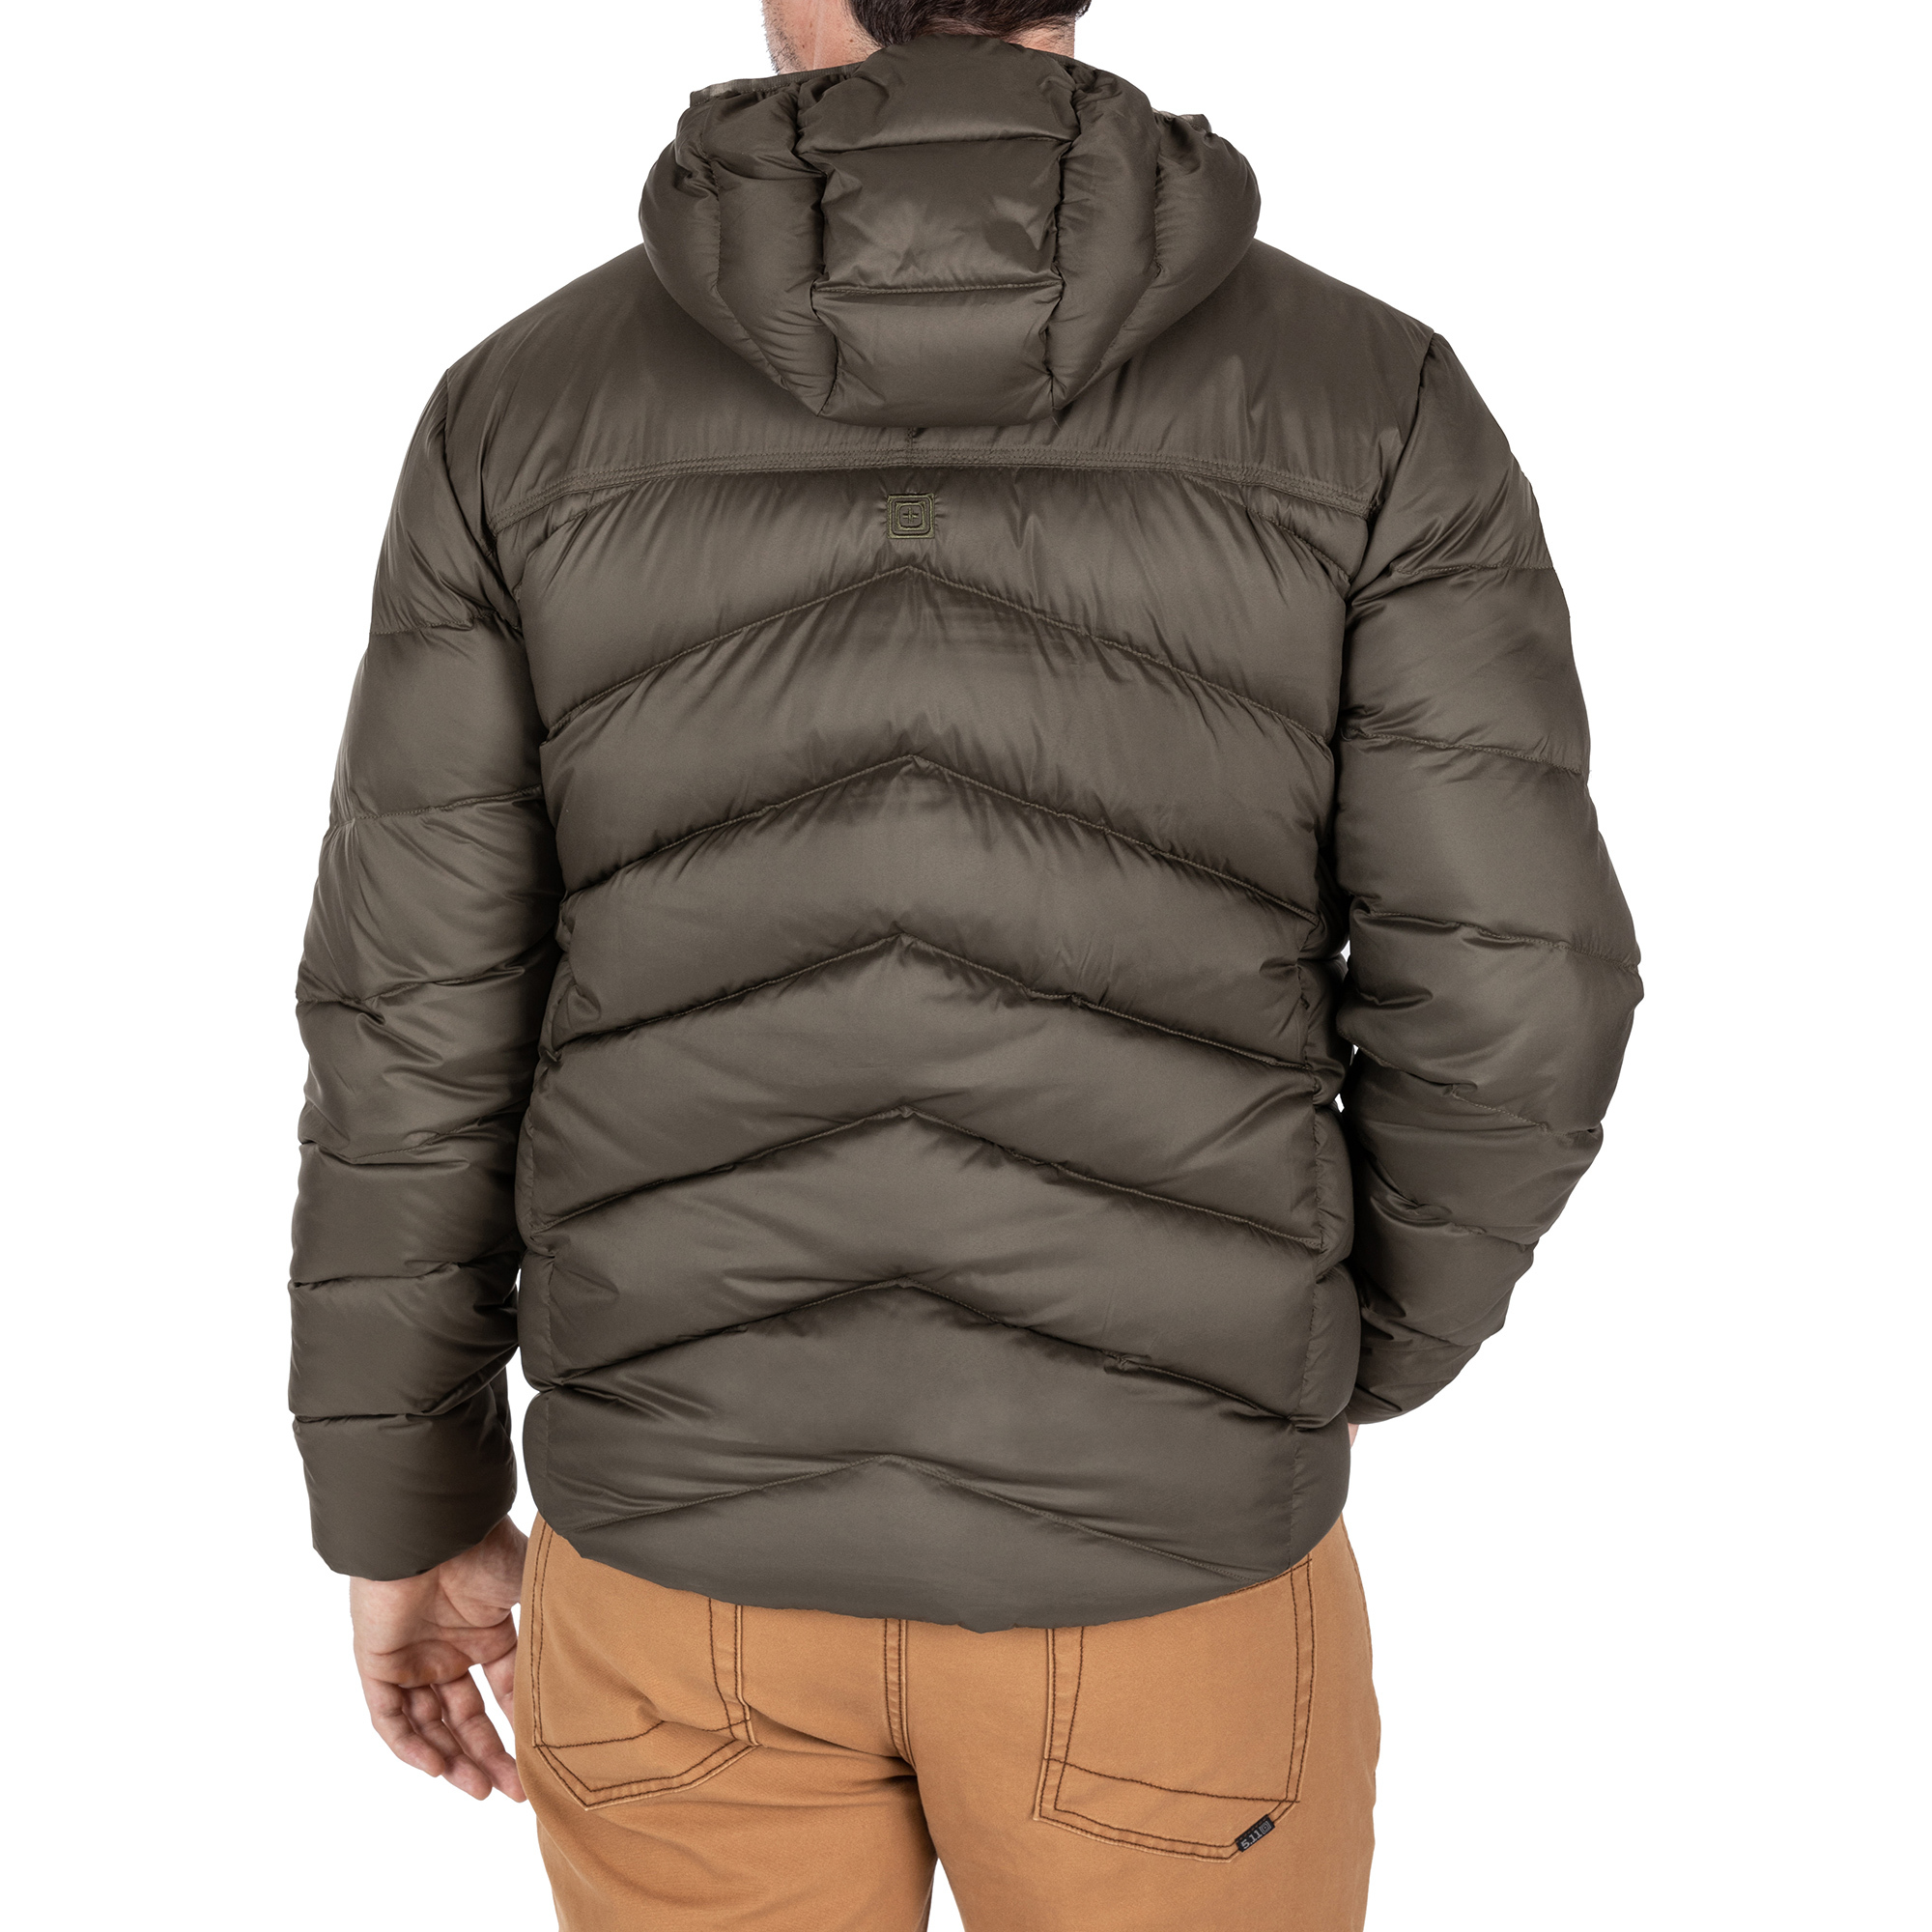 Пуховая куртка Acadia от 5.11 Tactical® на человеке, вид сзади, студийное фото